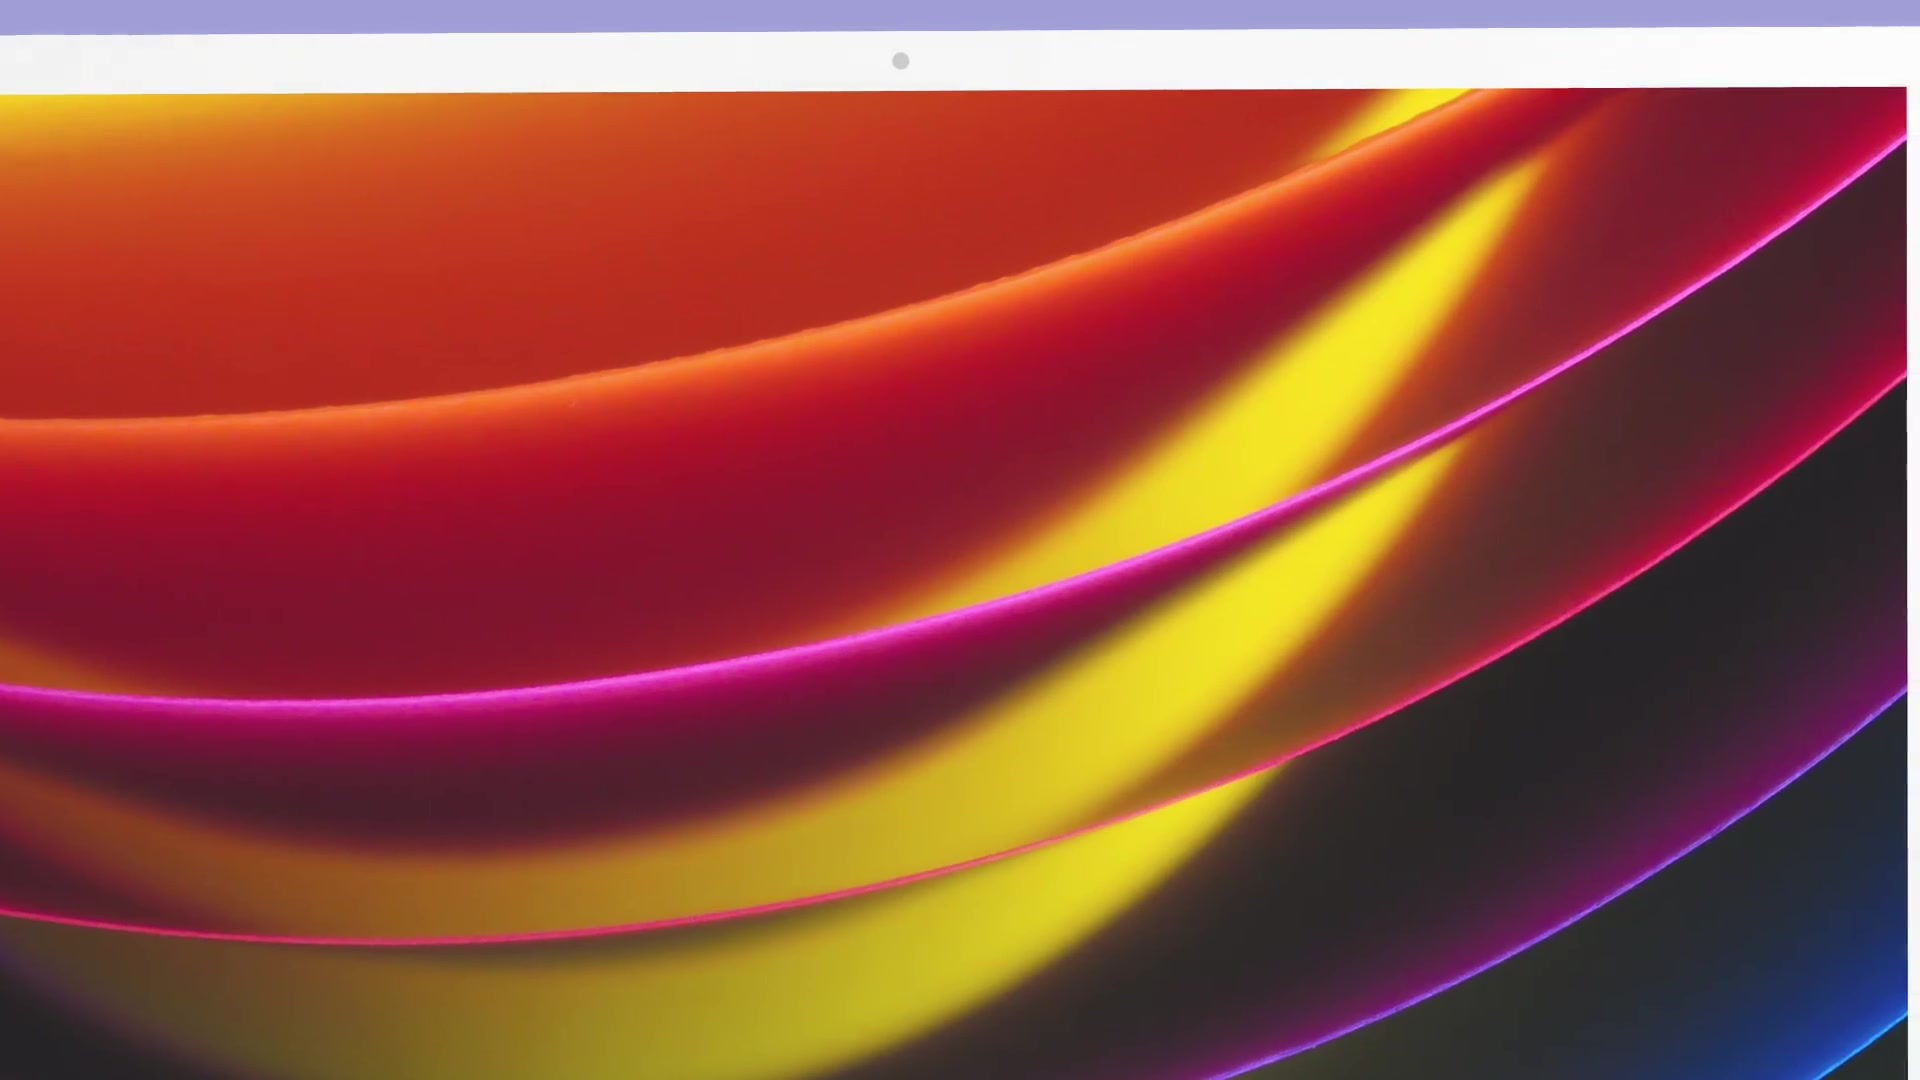 Colorful Display Website Desktop Mock Up Presentation Videohive 35023822 After Effects Image 7